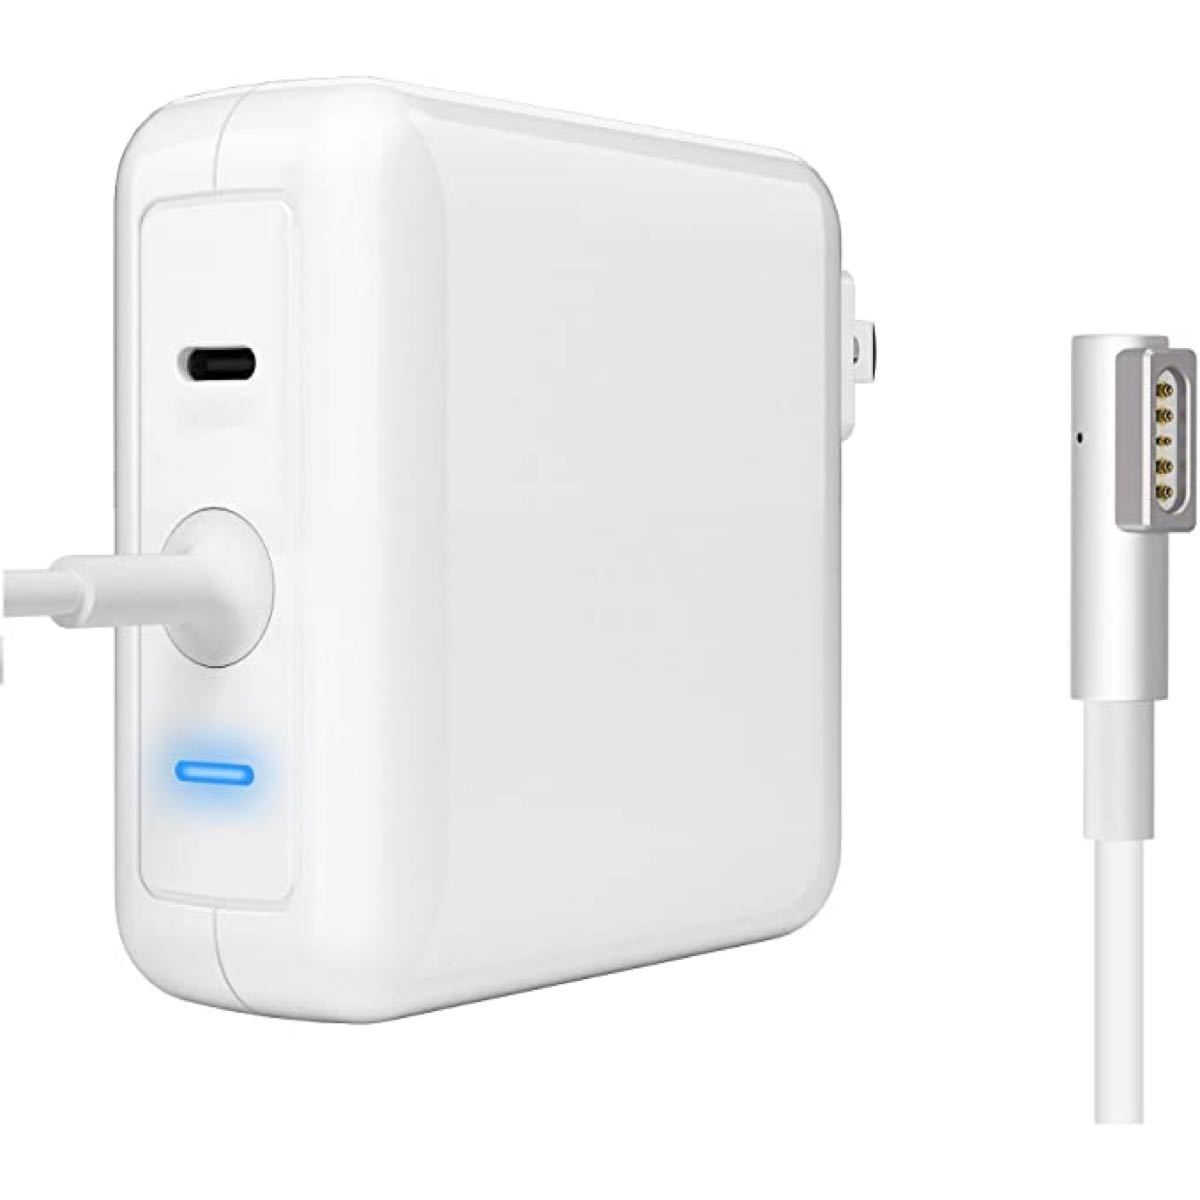 Macbook Pro 電源アダプタ 60W L型 充電器 Type-Cポート USB ACアダプタ iPhone&Android